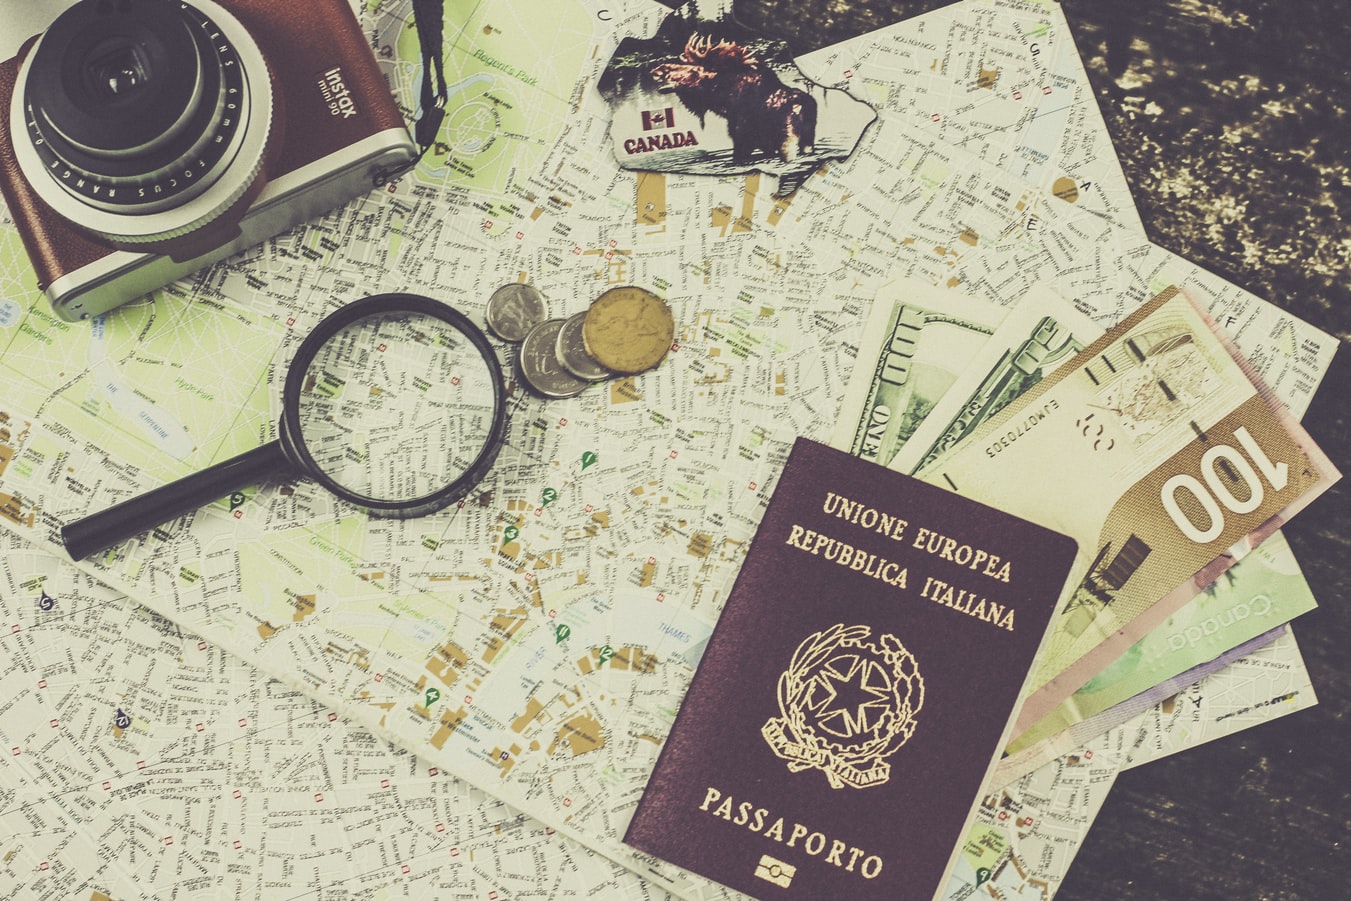 Passeport et monnaie étrangère disposés sur une carte pour organiser un voyage